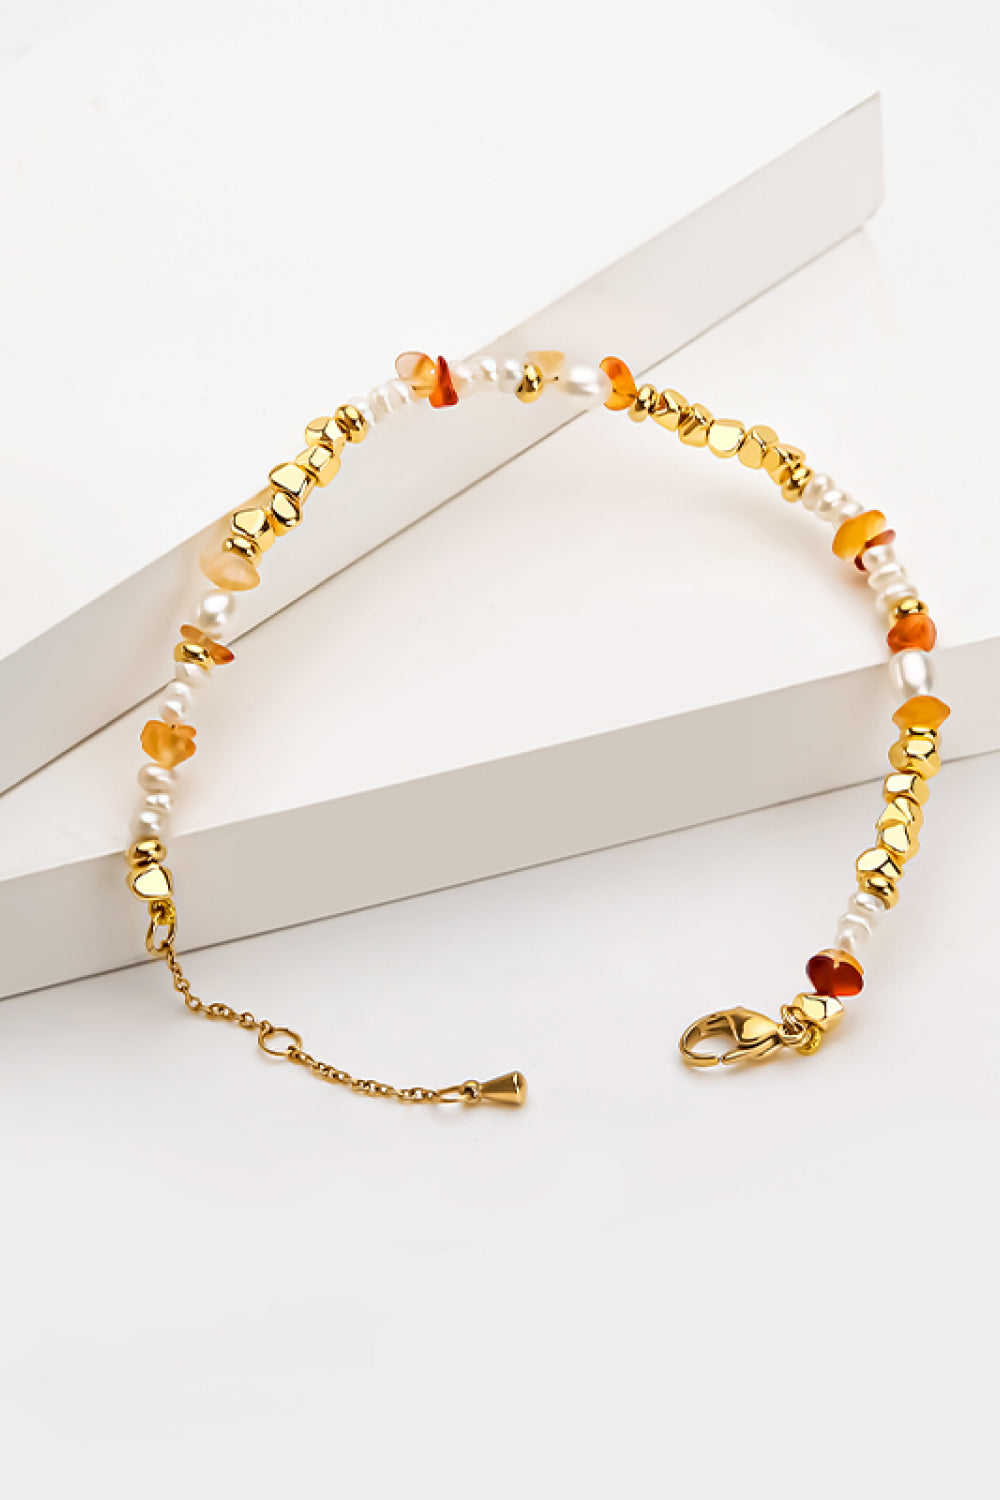 Freshwater Pearl Zinc Alloy Bracelet - Gold / One Size - Women’s Jewelry - Bracelets - 2 - 2024